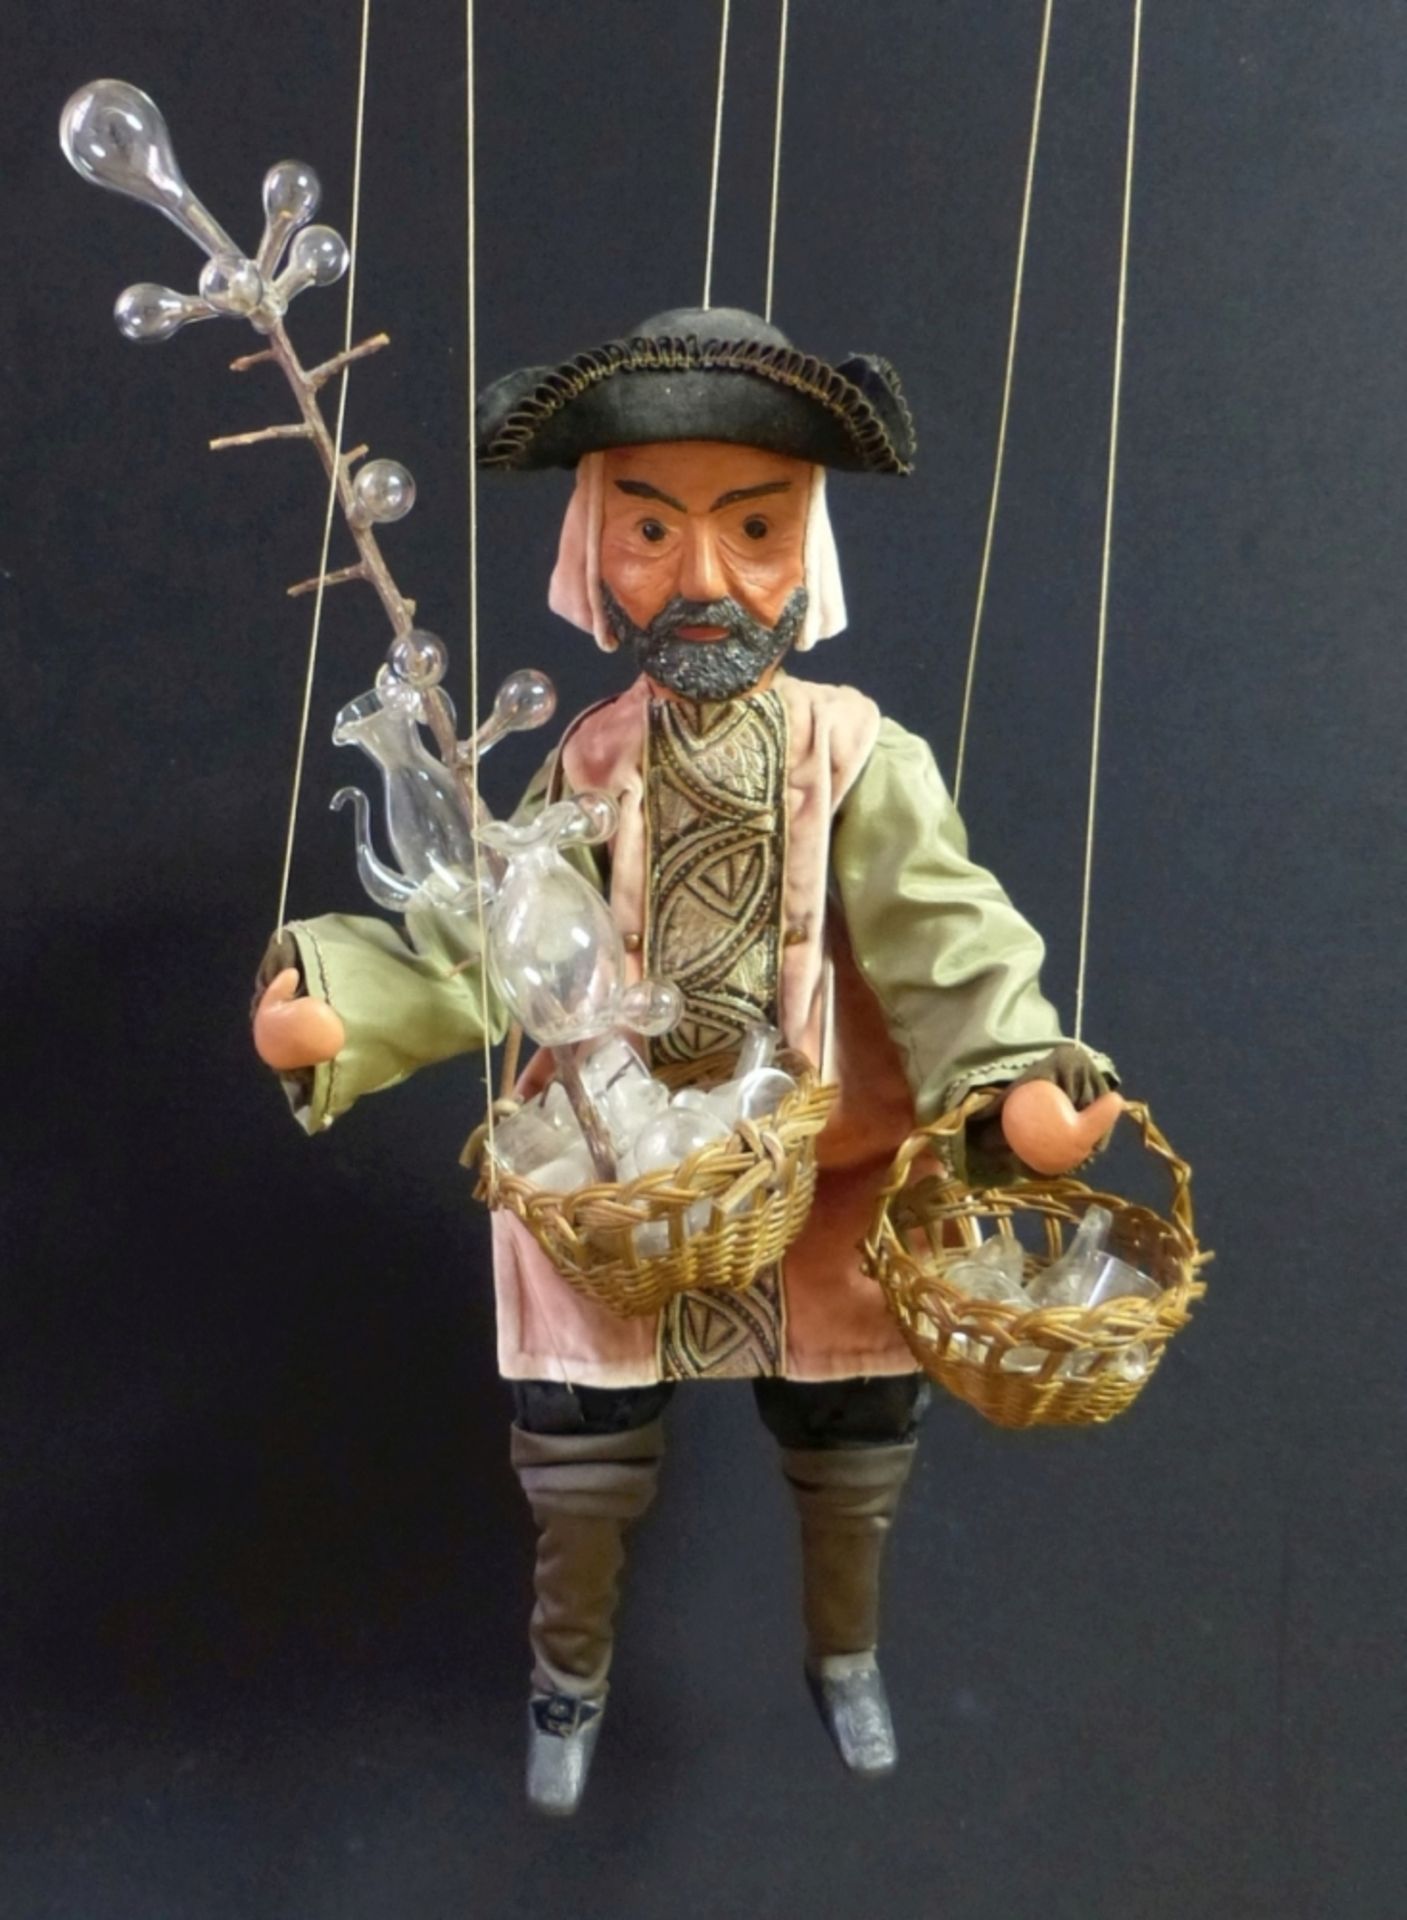 Seltene Marionettenfigur eines Glashändlers19. Jh.Bewegliche Puppe mit sechs Fäden an Waagekreuz. - Image 2 of 2